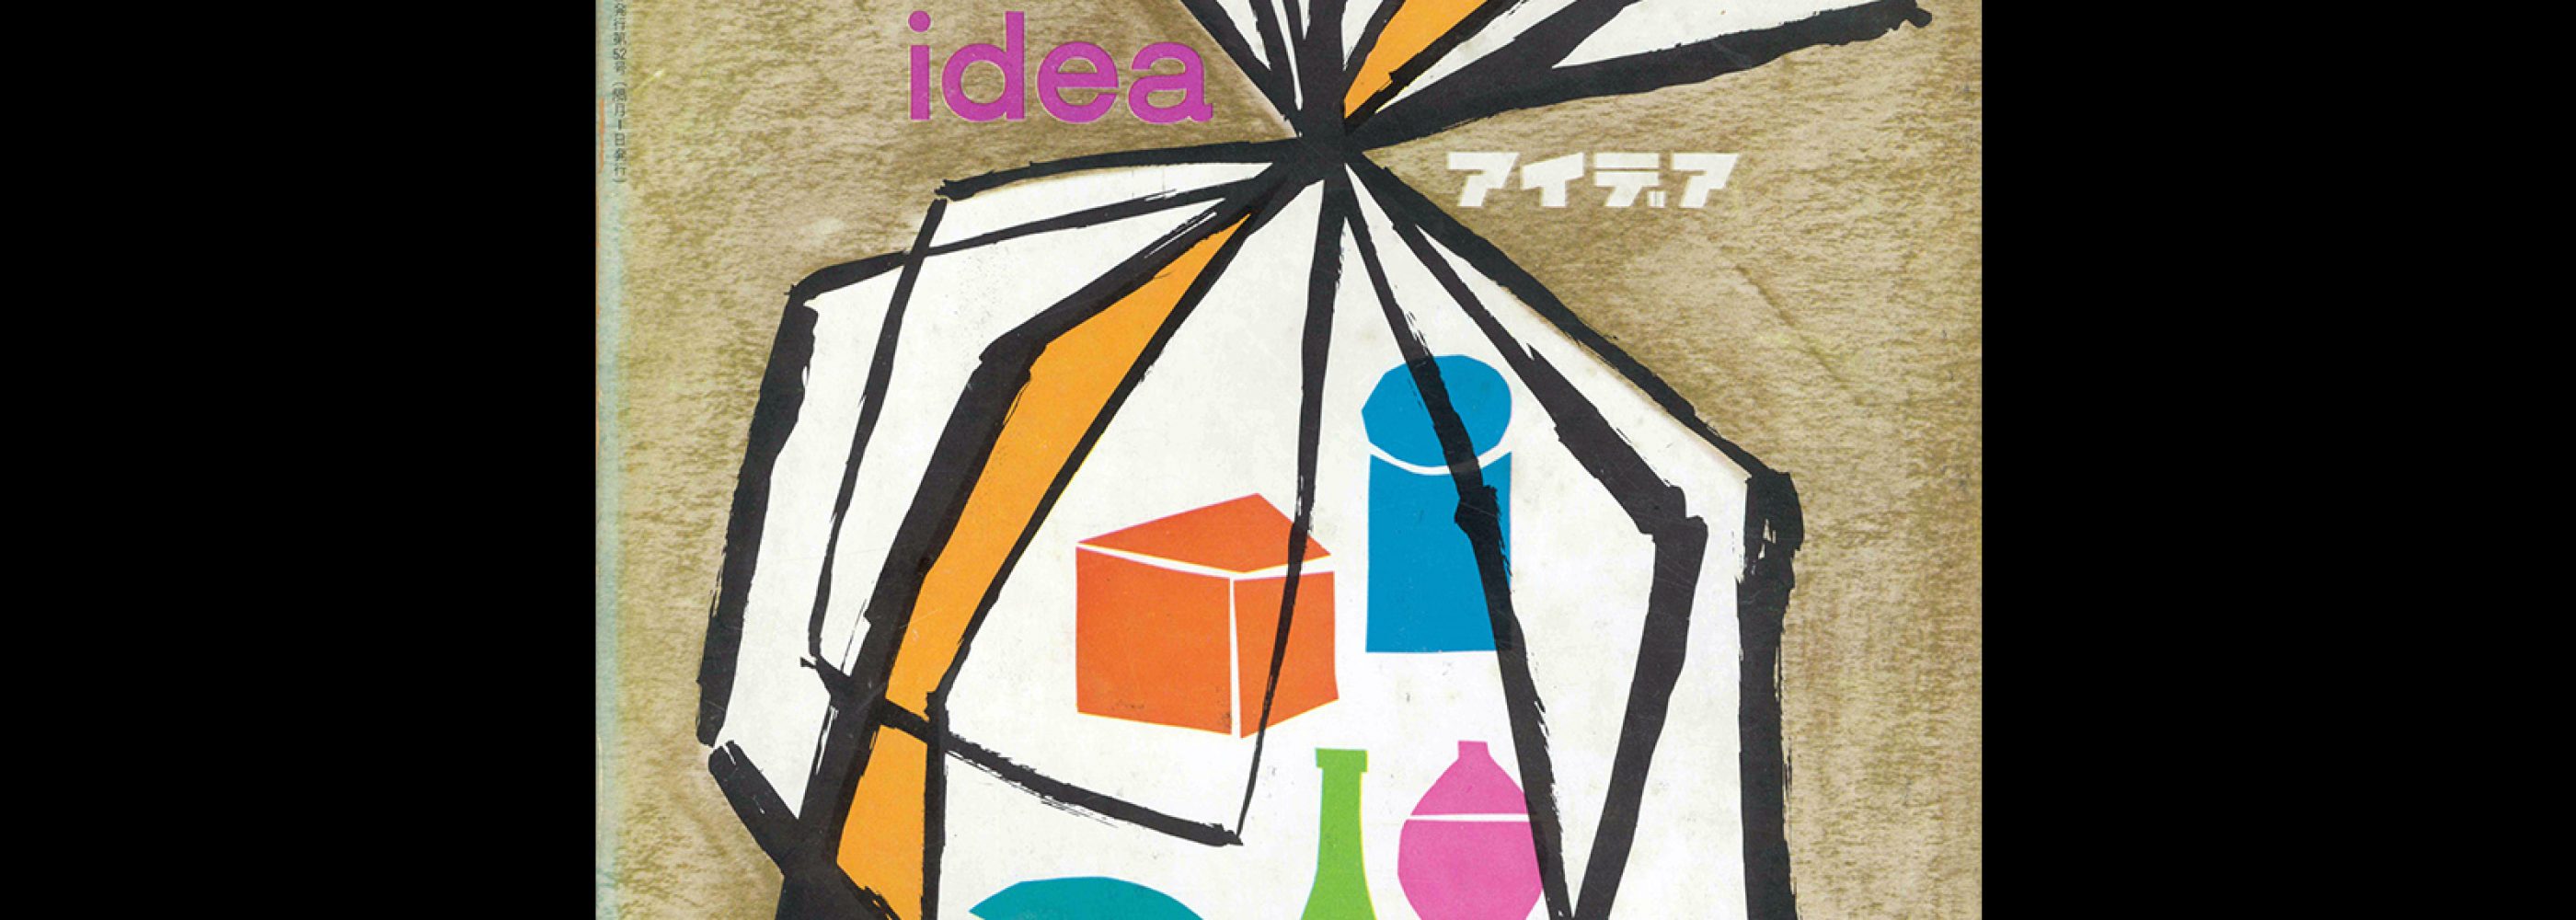 Idea 52, 1962. Cover design by Walter Landor.